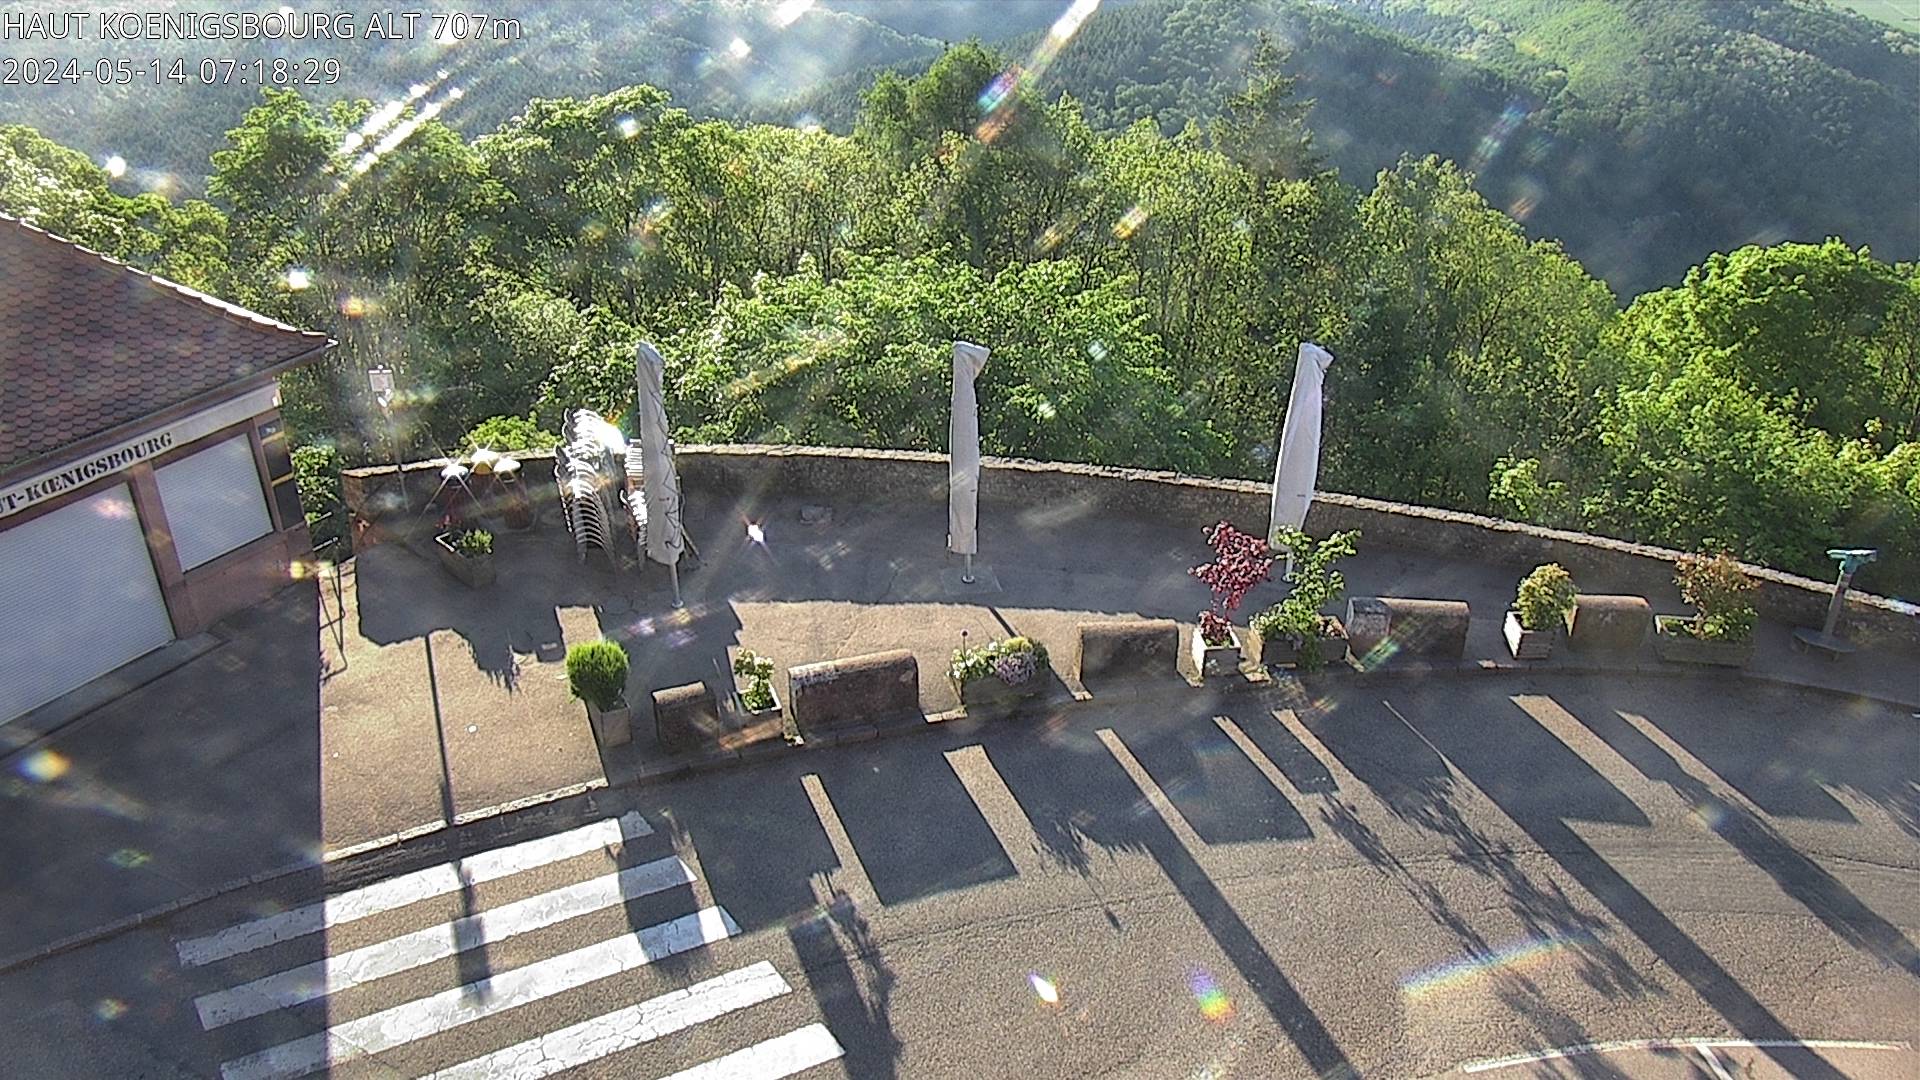 Webcam depuis le Château du Haut-Koenigsbourg à 700 mètres d'altitude, sur la D159